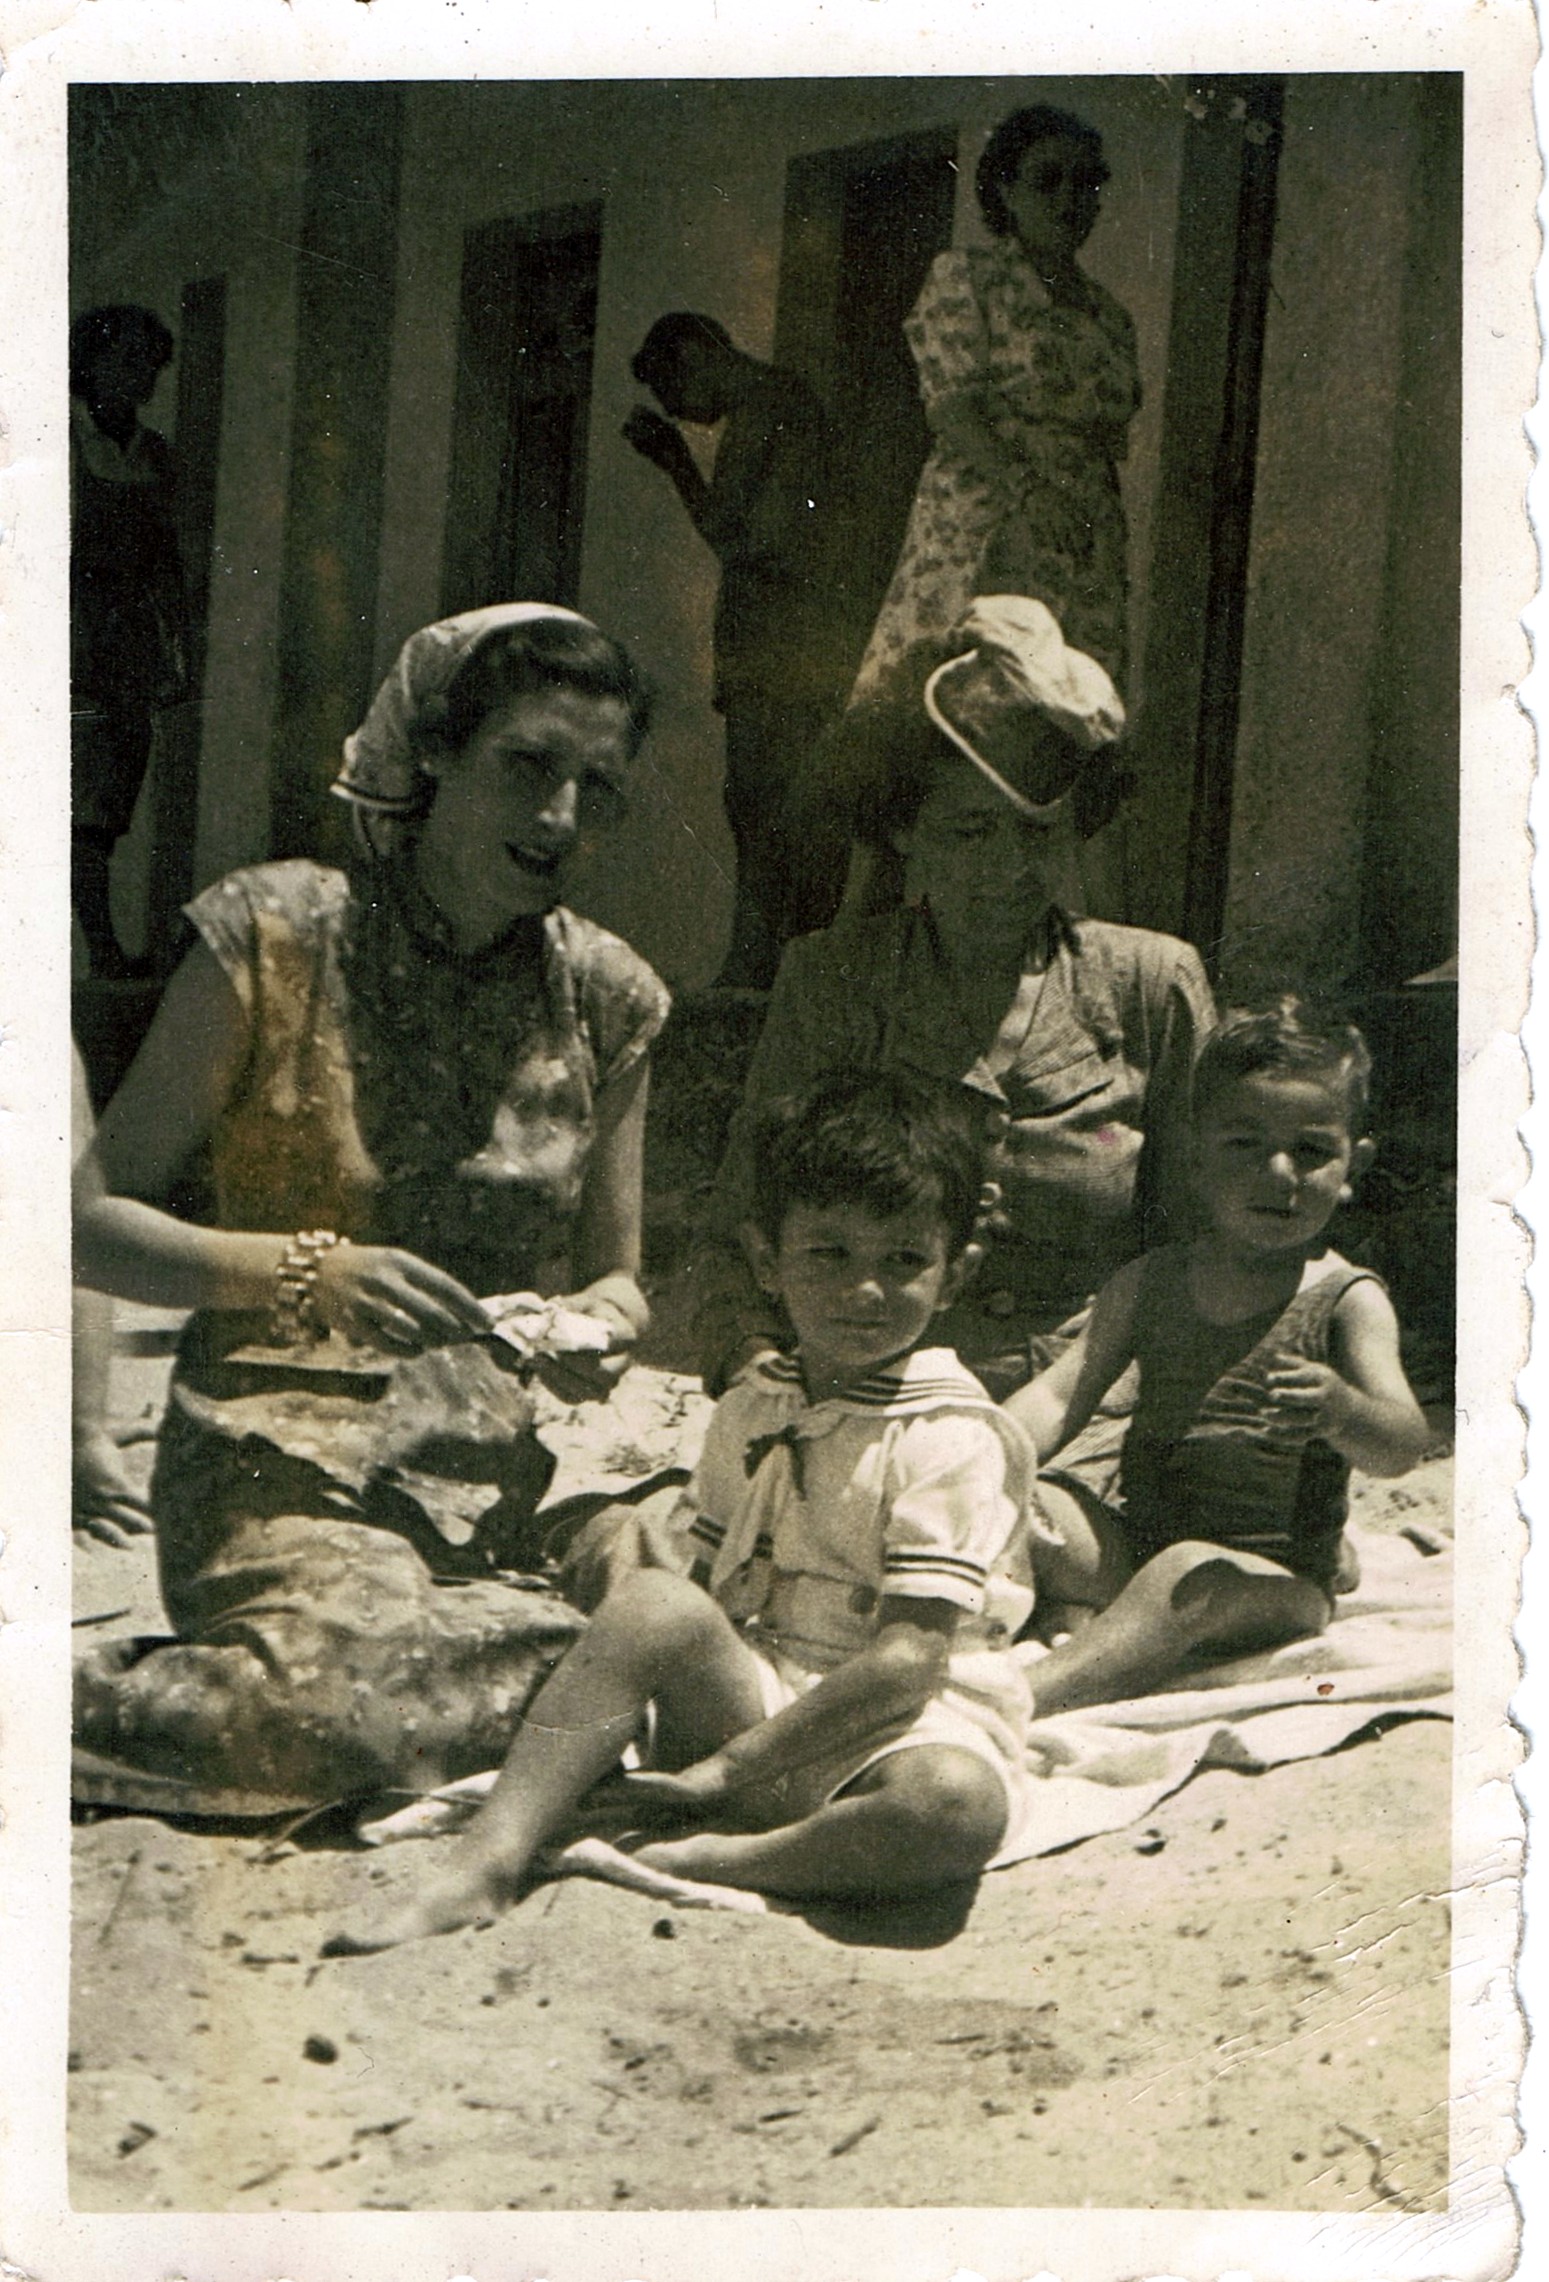 Ampliar: En Portocelo, Marín coa miña Madrtiña Mercedes, cara 1956